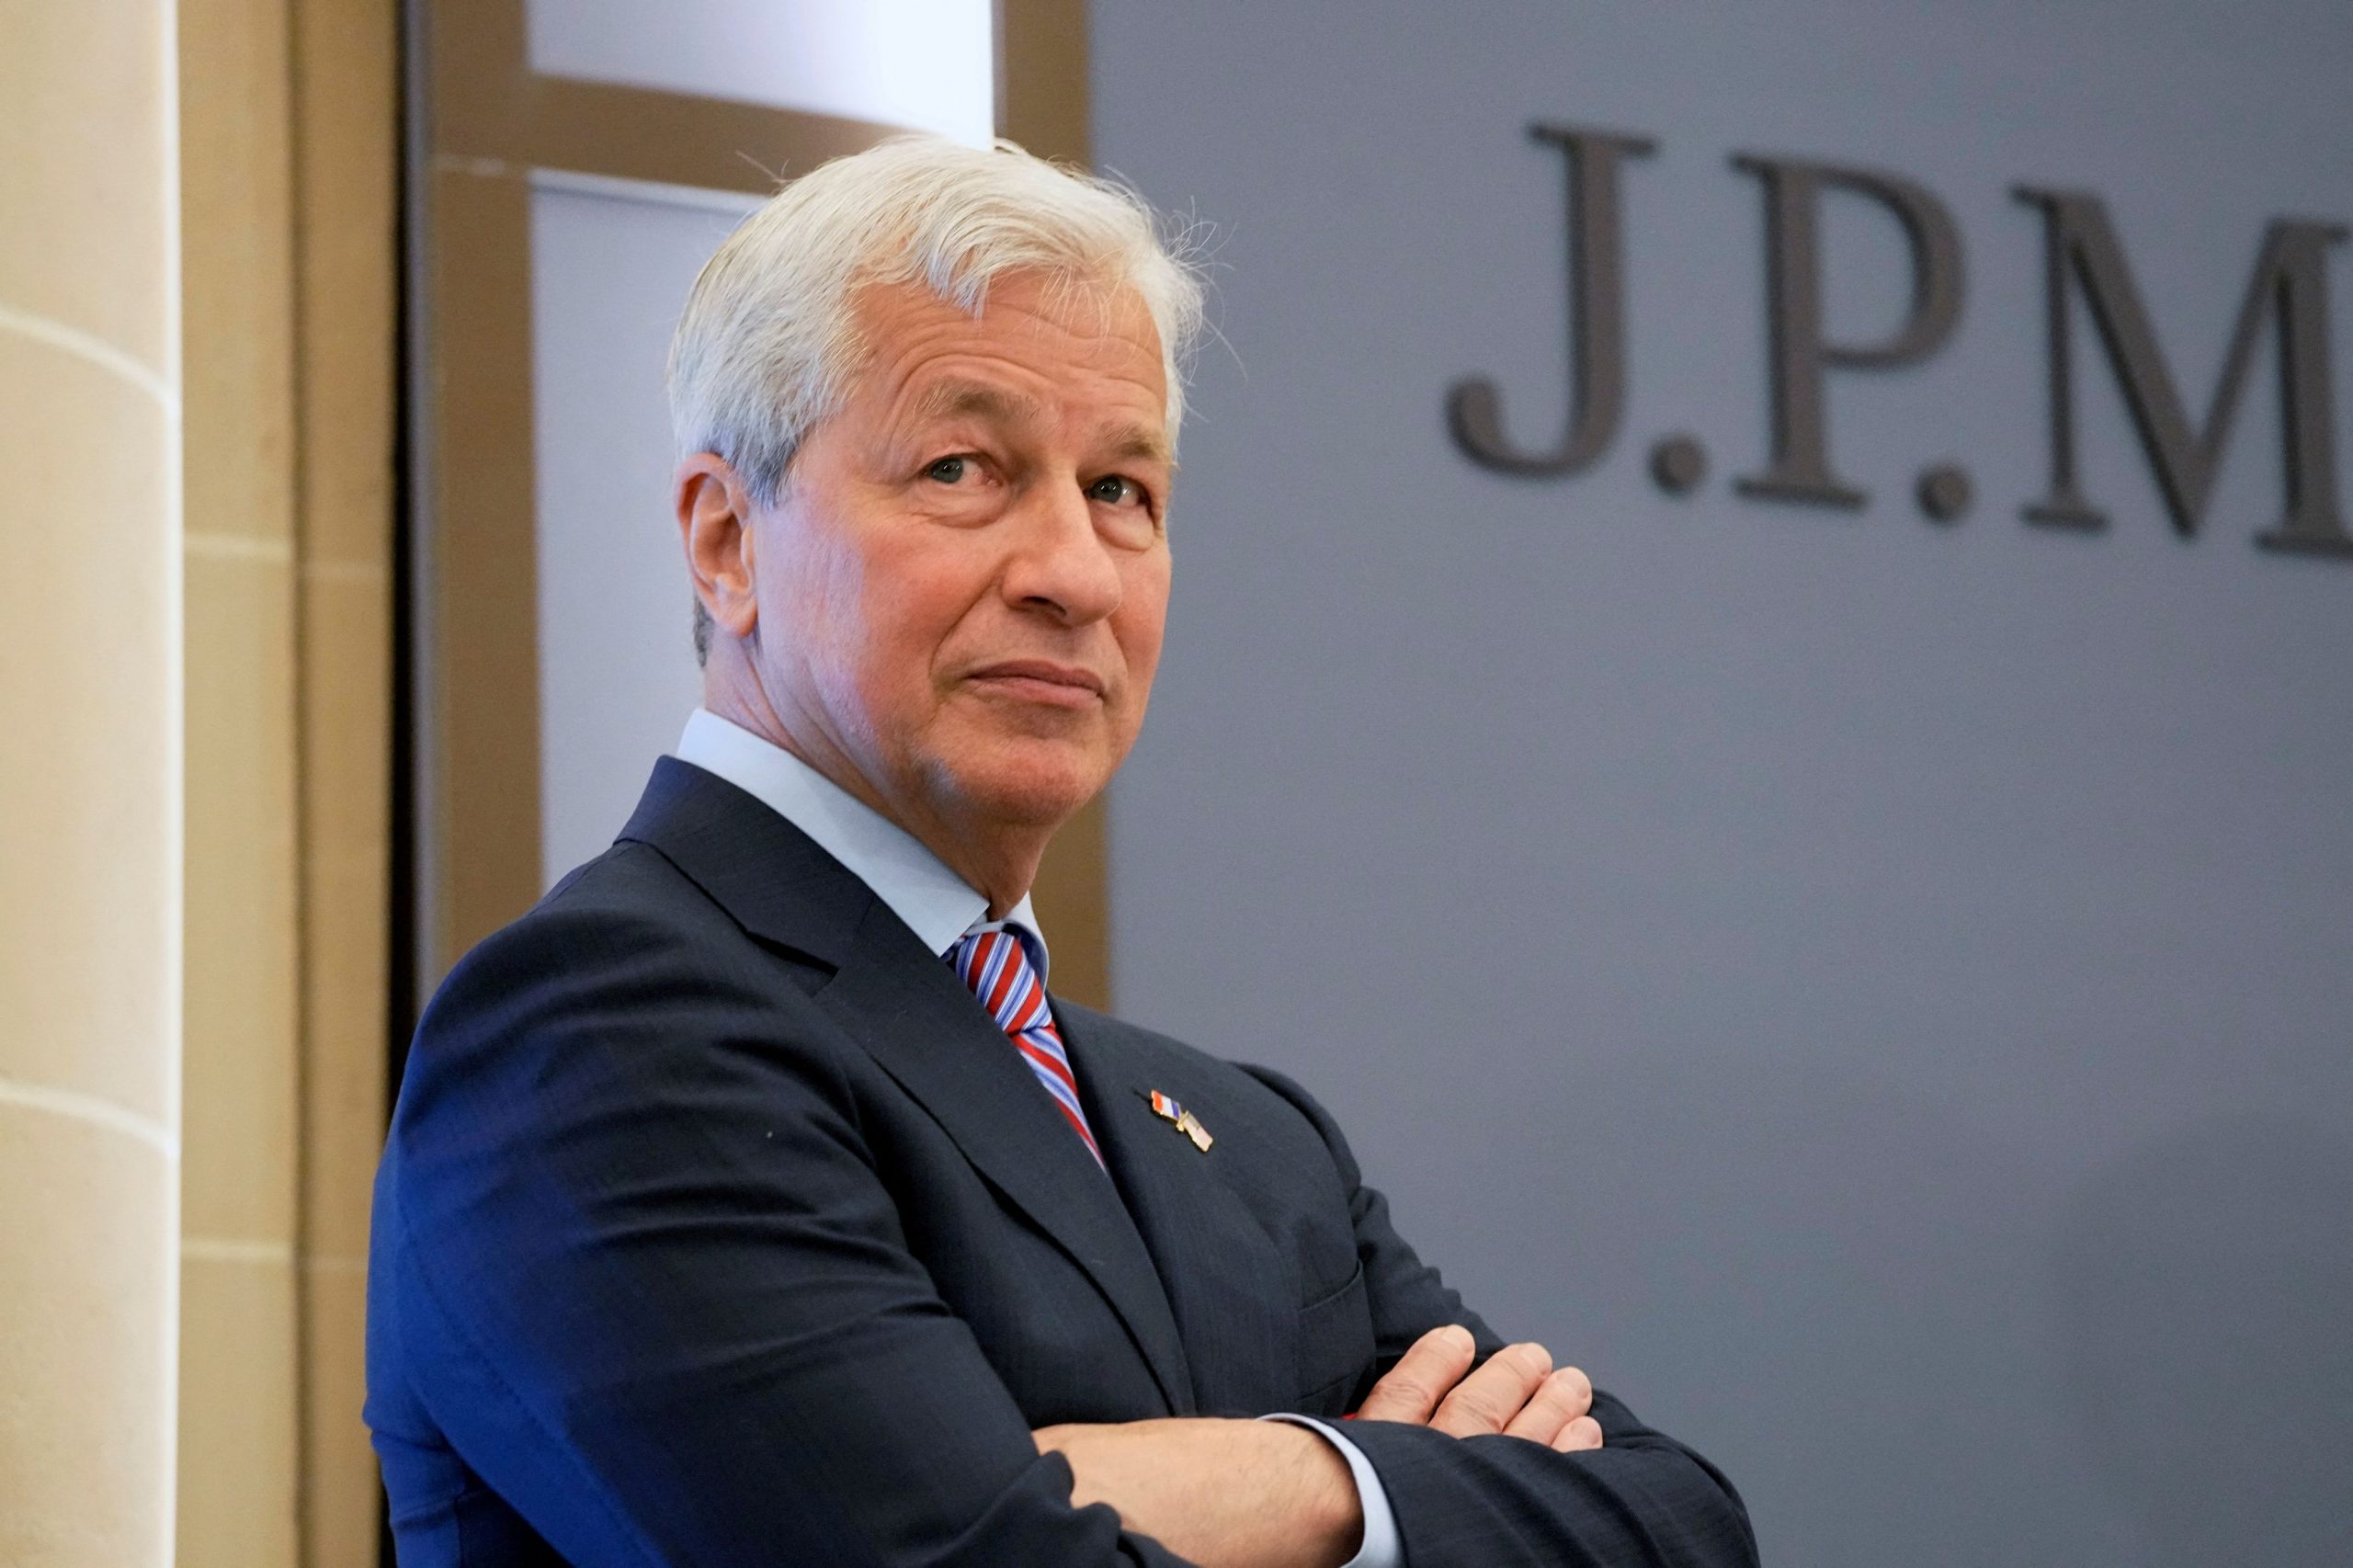 Ντάιμον vs Μπάφετ: Το success story της JP Morgan και η βουτιά της Berkshire